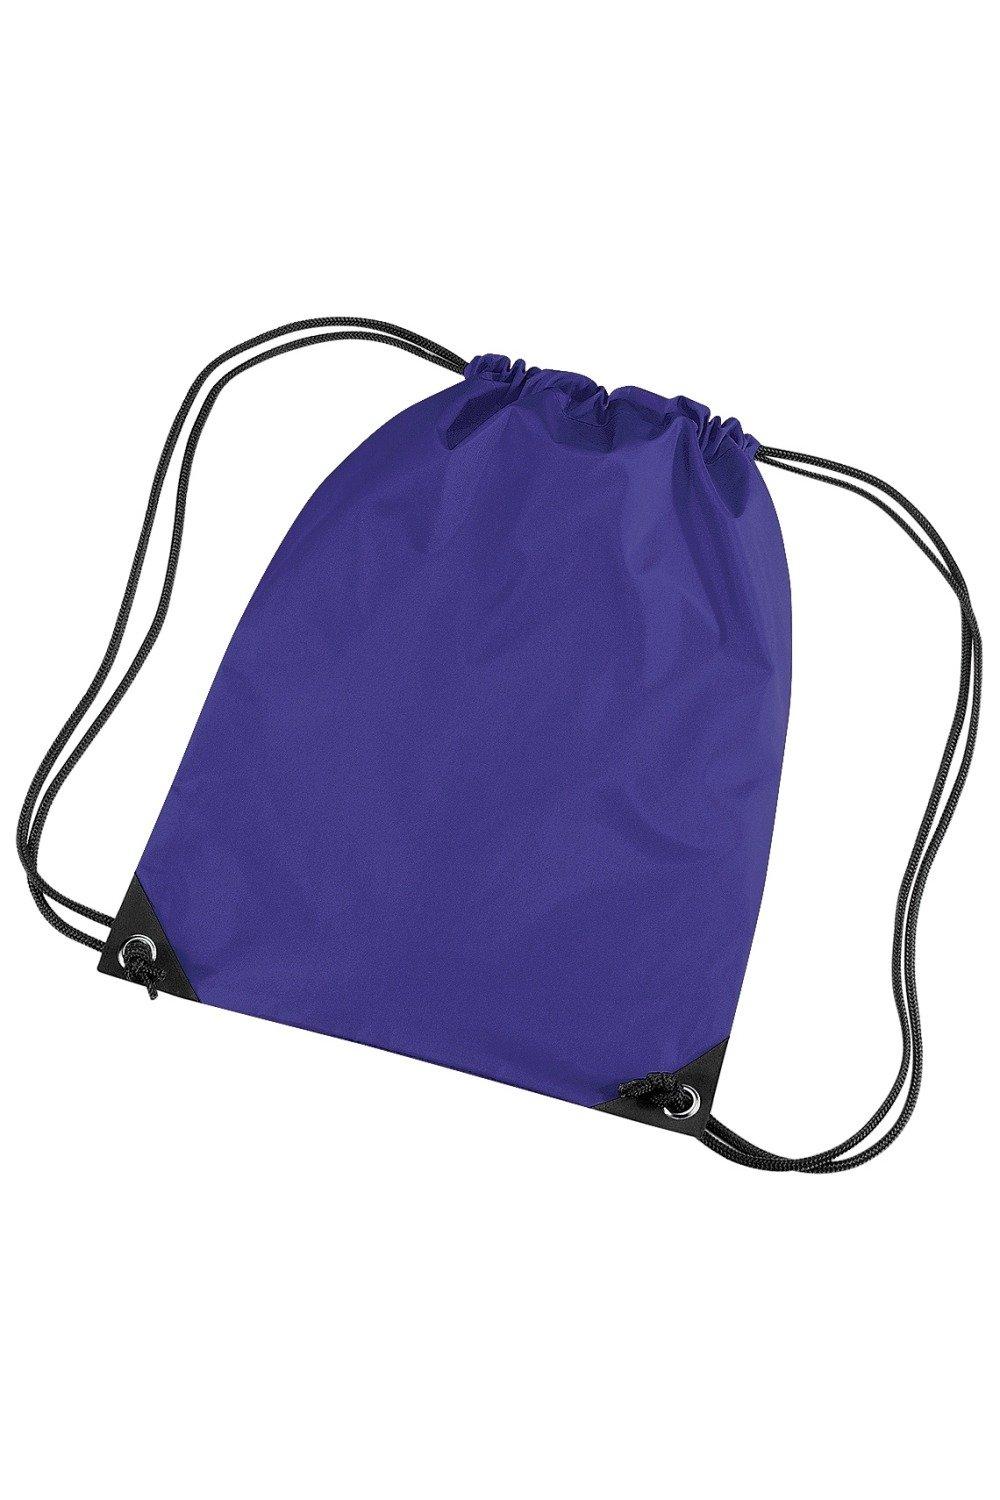 Водонепроницаемая сумка Gymsac премиум-класса (11 литров) Bagbase, фиолетовый